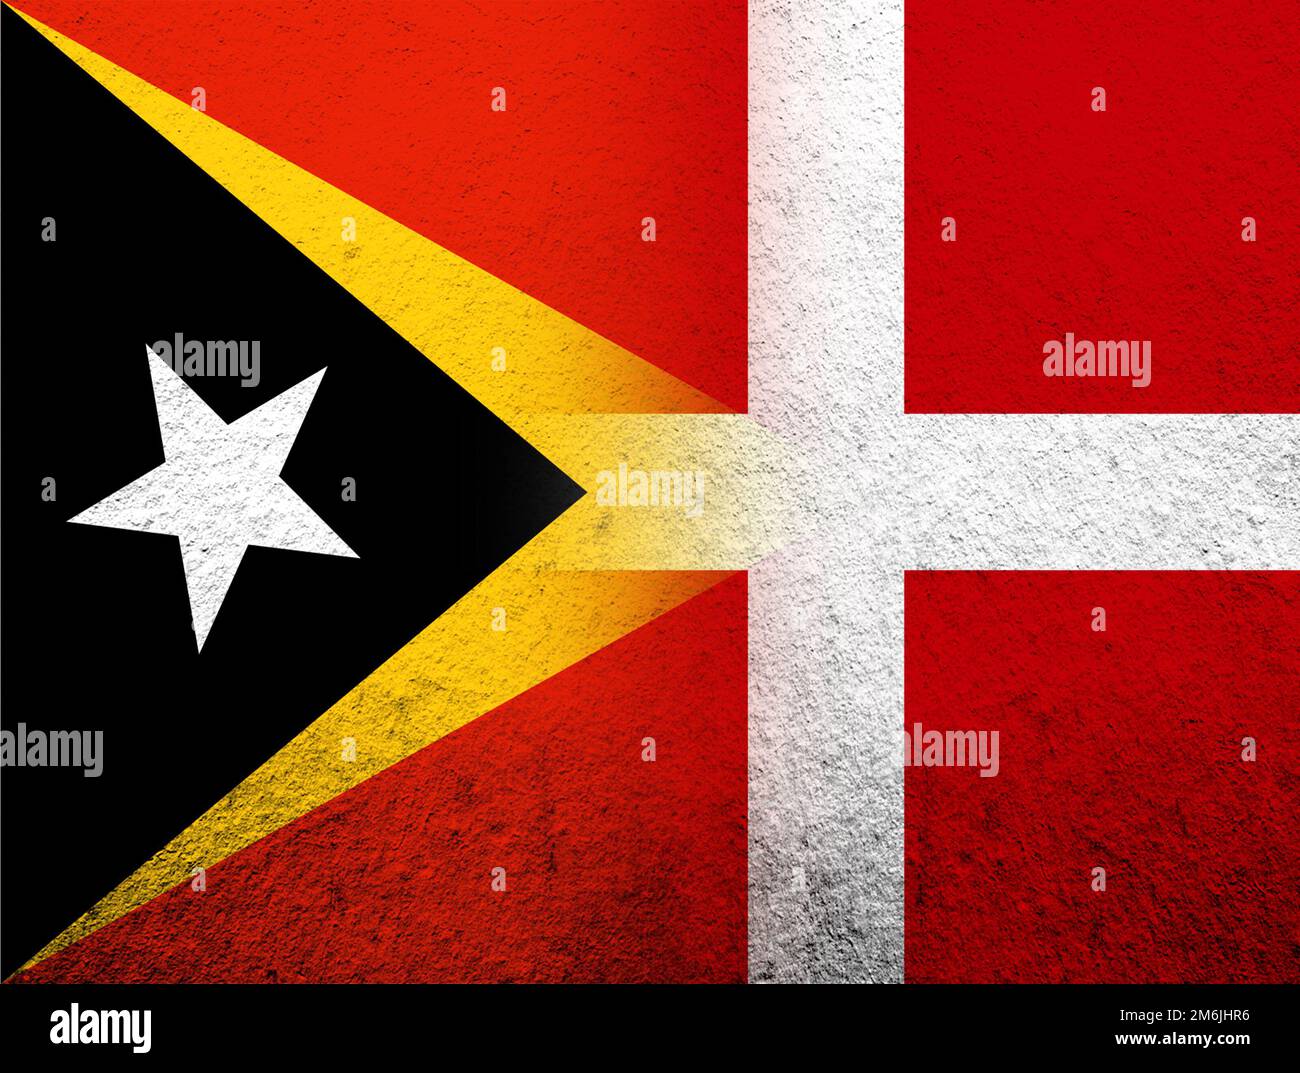 Le Royaume du Danemark drapeau national avec le Timor-Leste drapeau national. Grunge l'arrière-plan Banque D'Images